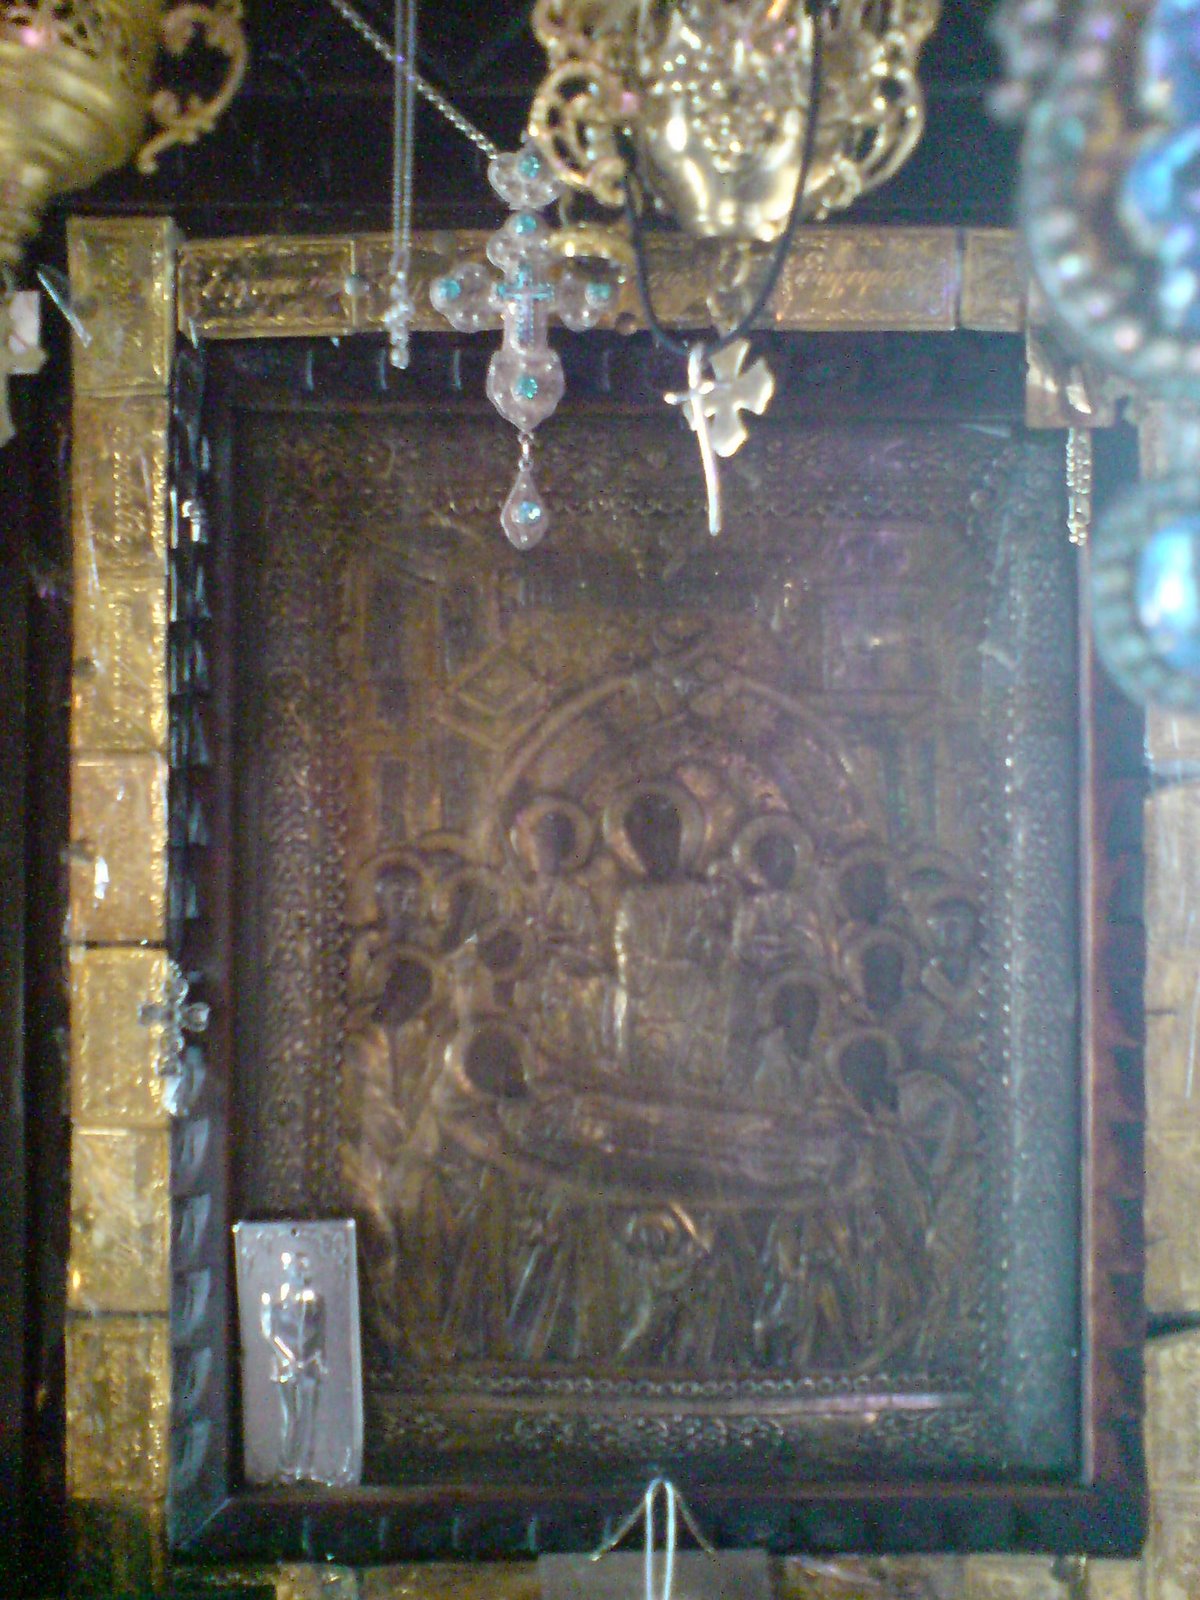 Η θαυματουργική και μυροβλύζουσα εικόνα της Παναγίας Μαλεβής (κοίμηση της Θεοτόκου).